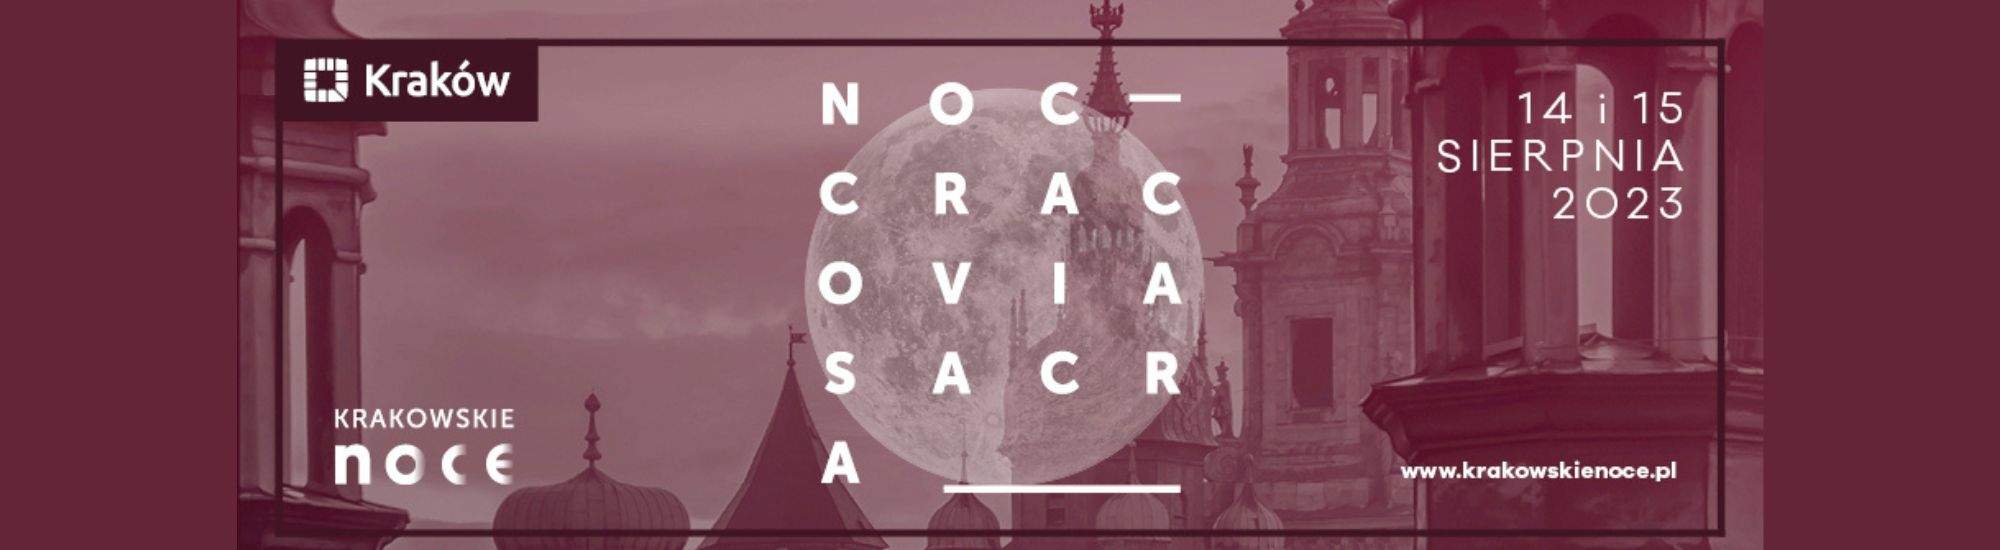 Notti Sacre di Cracovia: concerti, mostre e scoperta dei segreti delle chiese